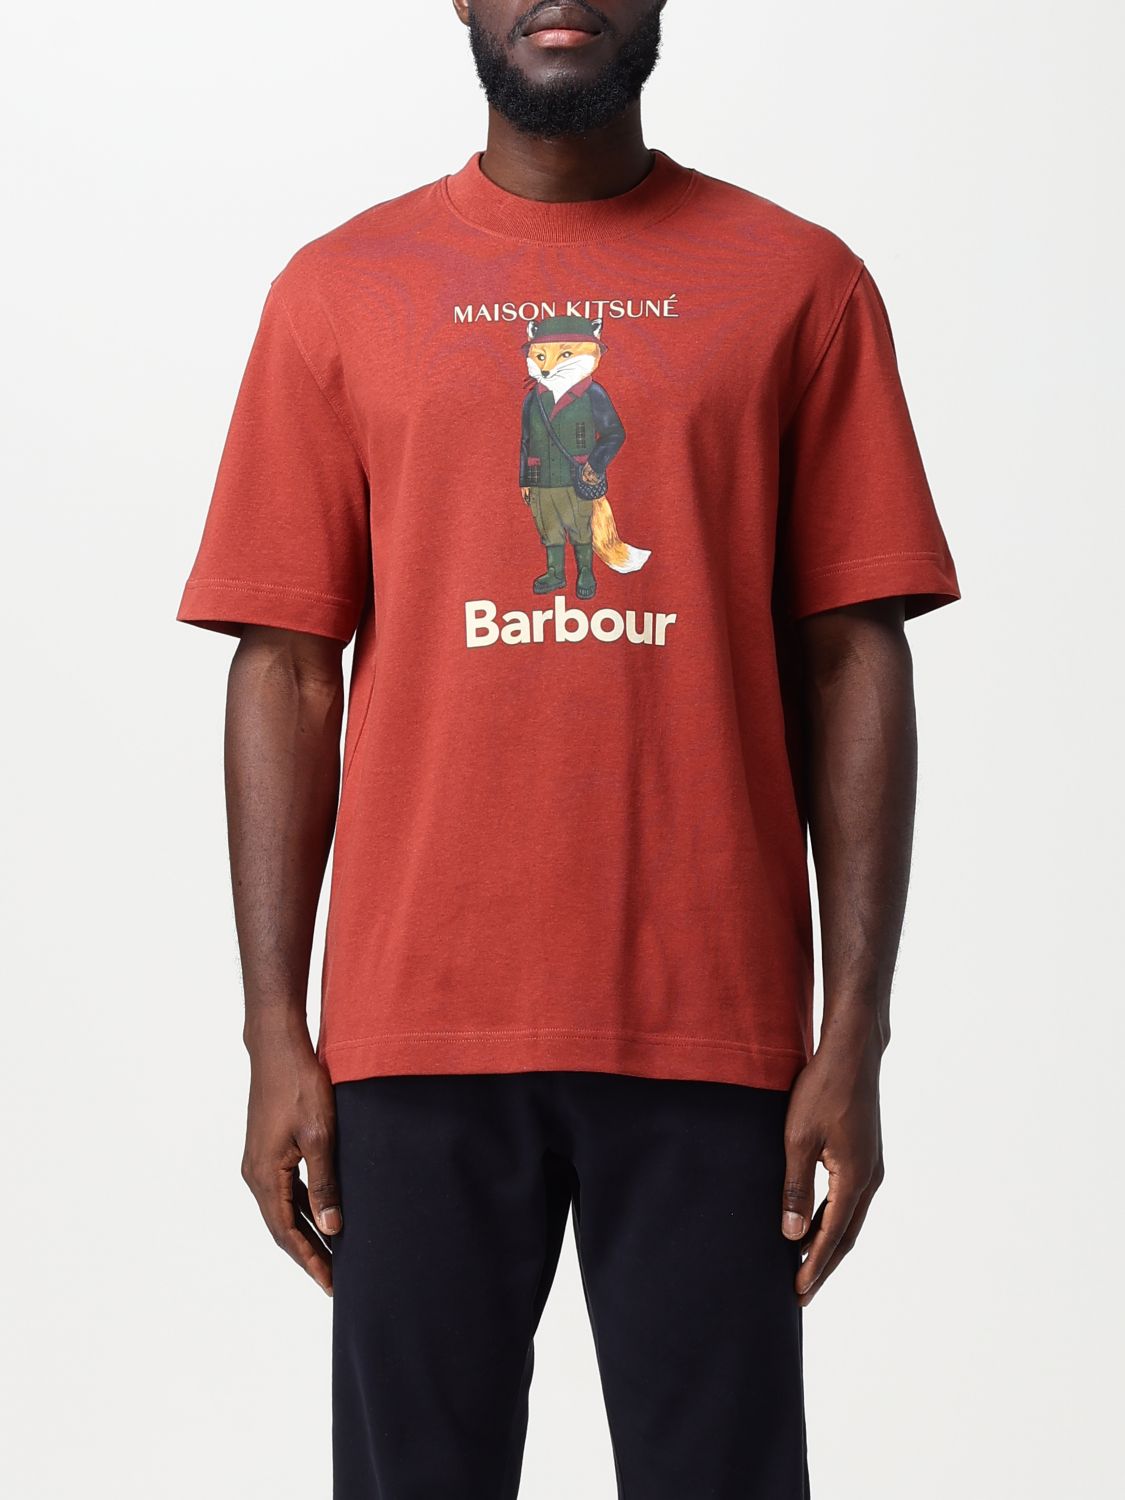 maison kitsuné x barbour T-Shirt MAISON KITSUNE X BARBOUR Men colour Burnt